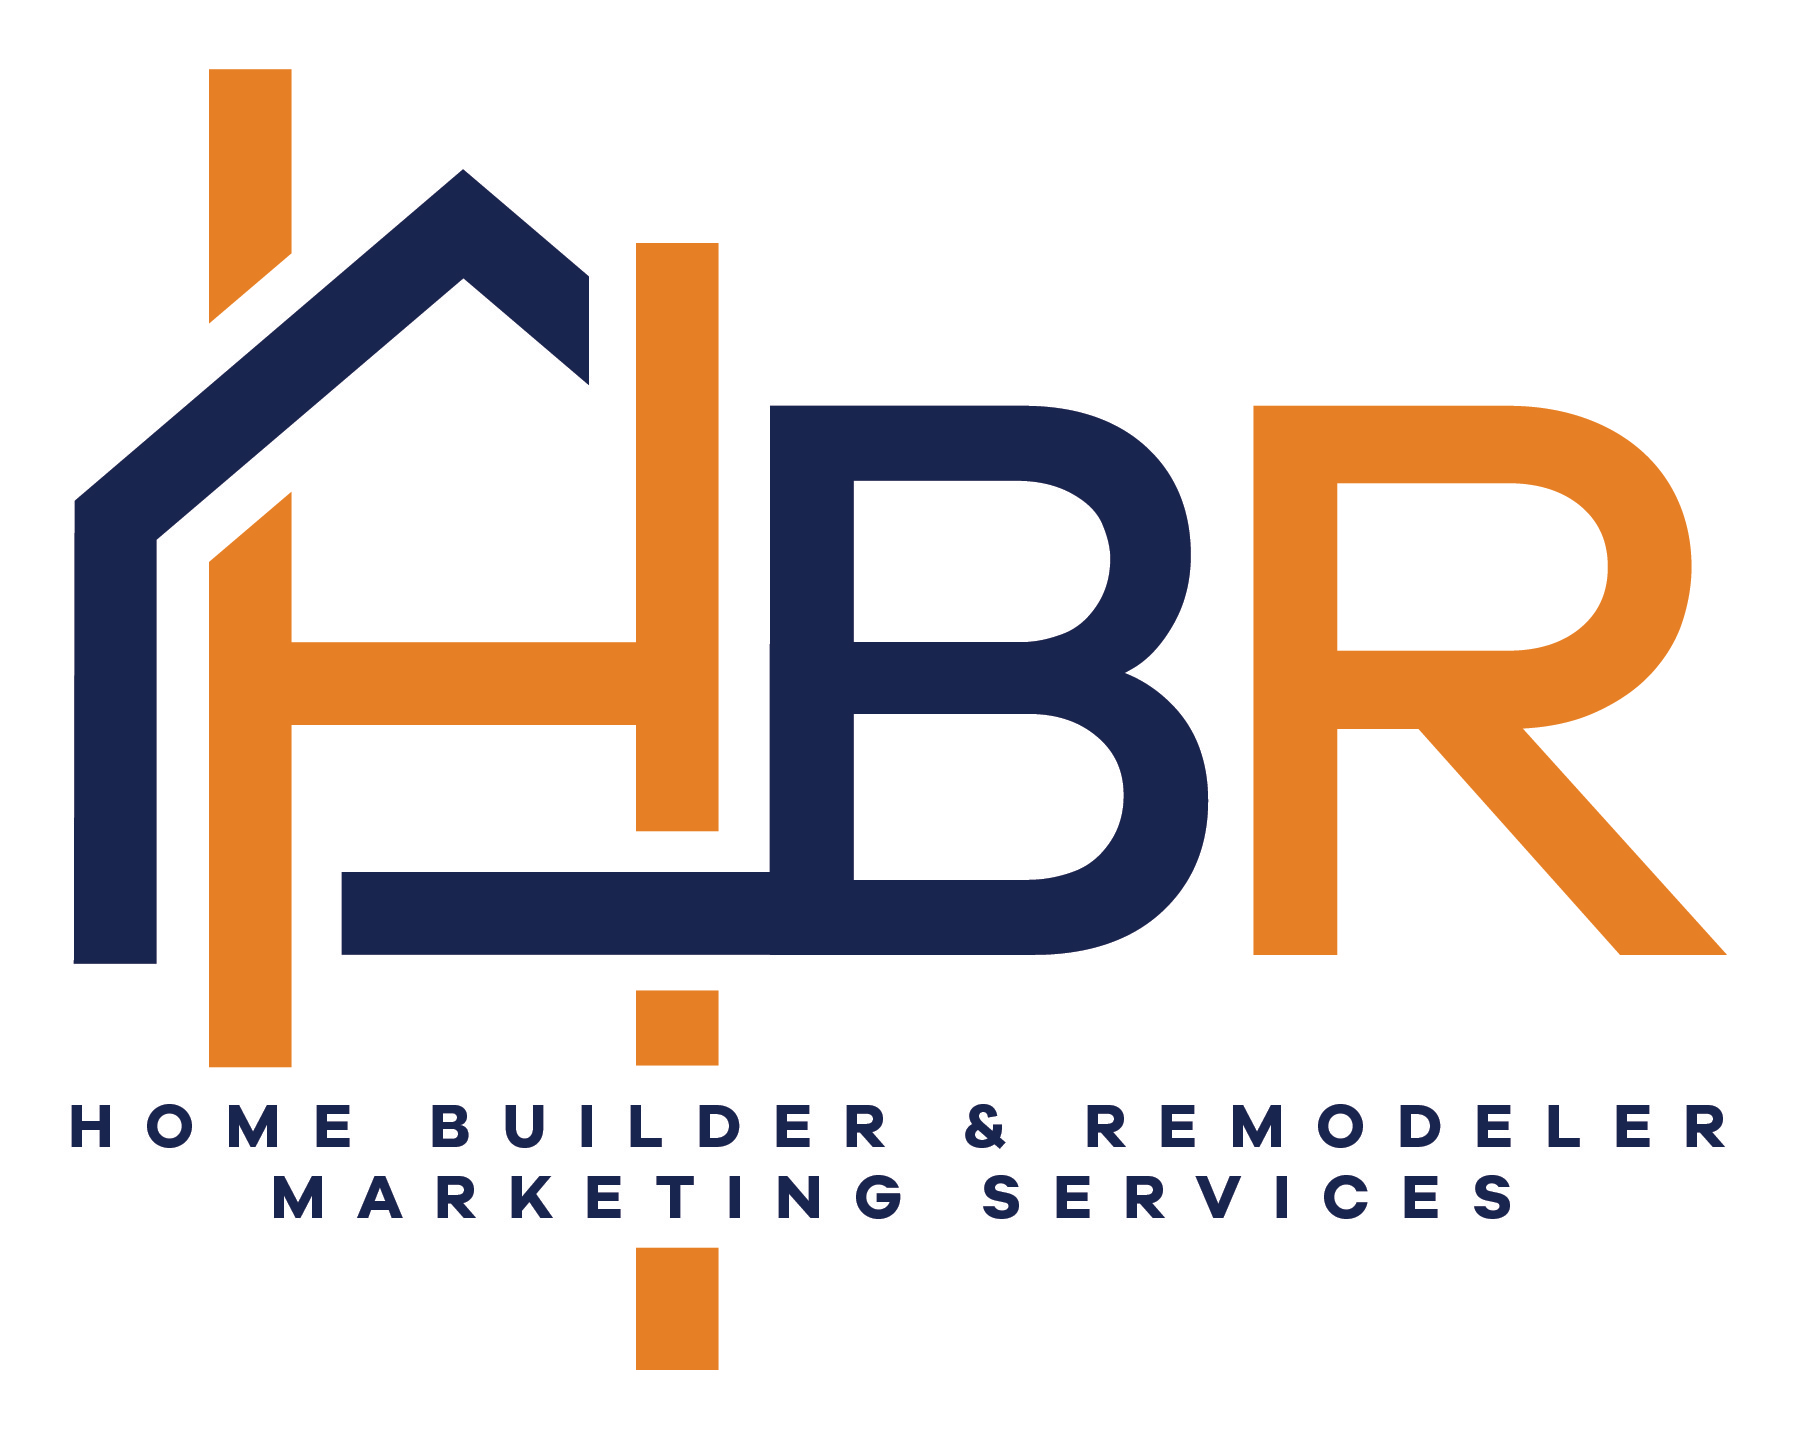 HBR Digital Contractor marketing company logo